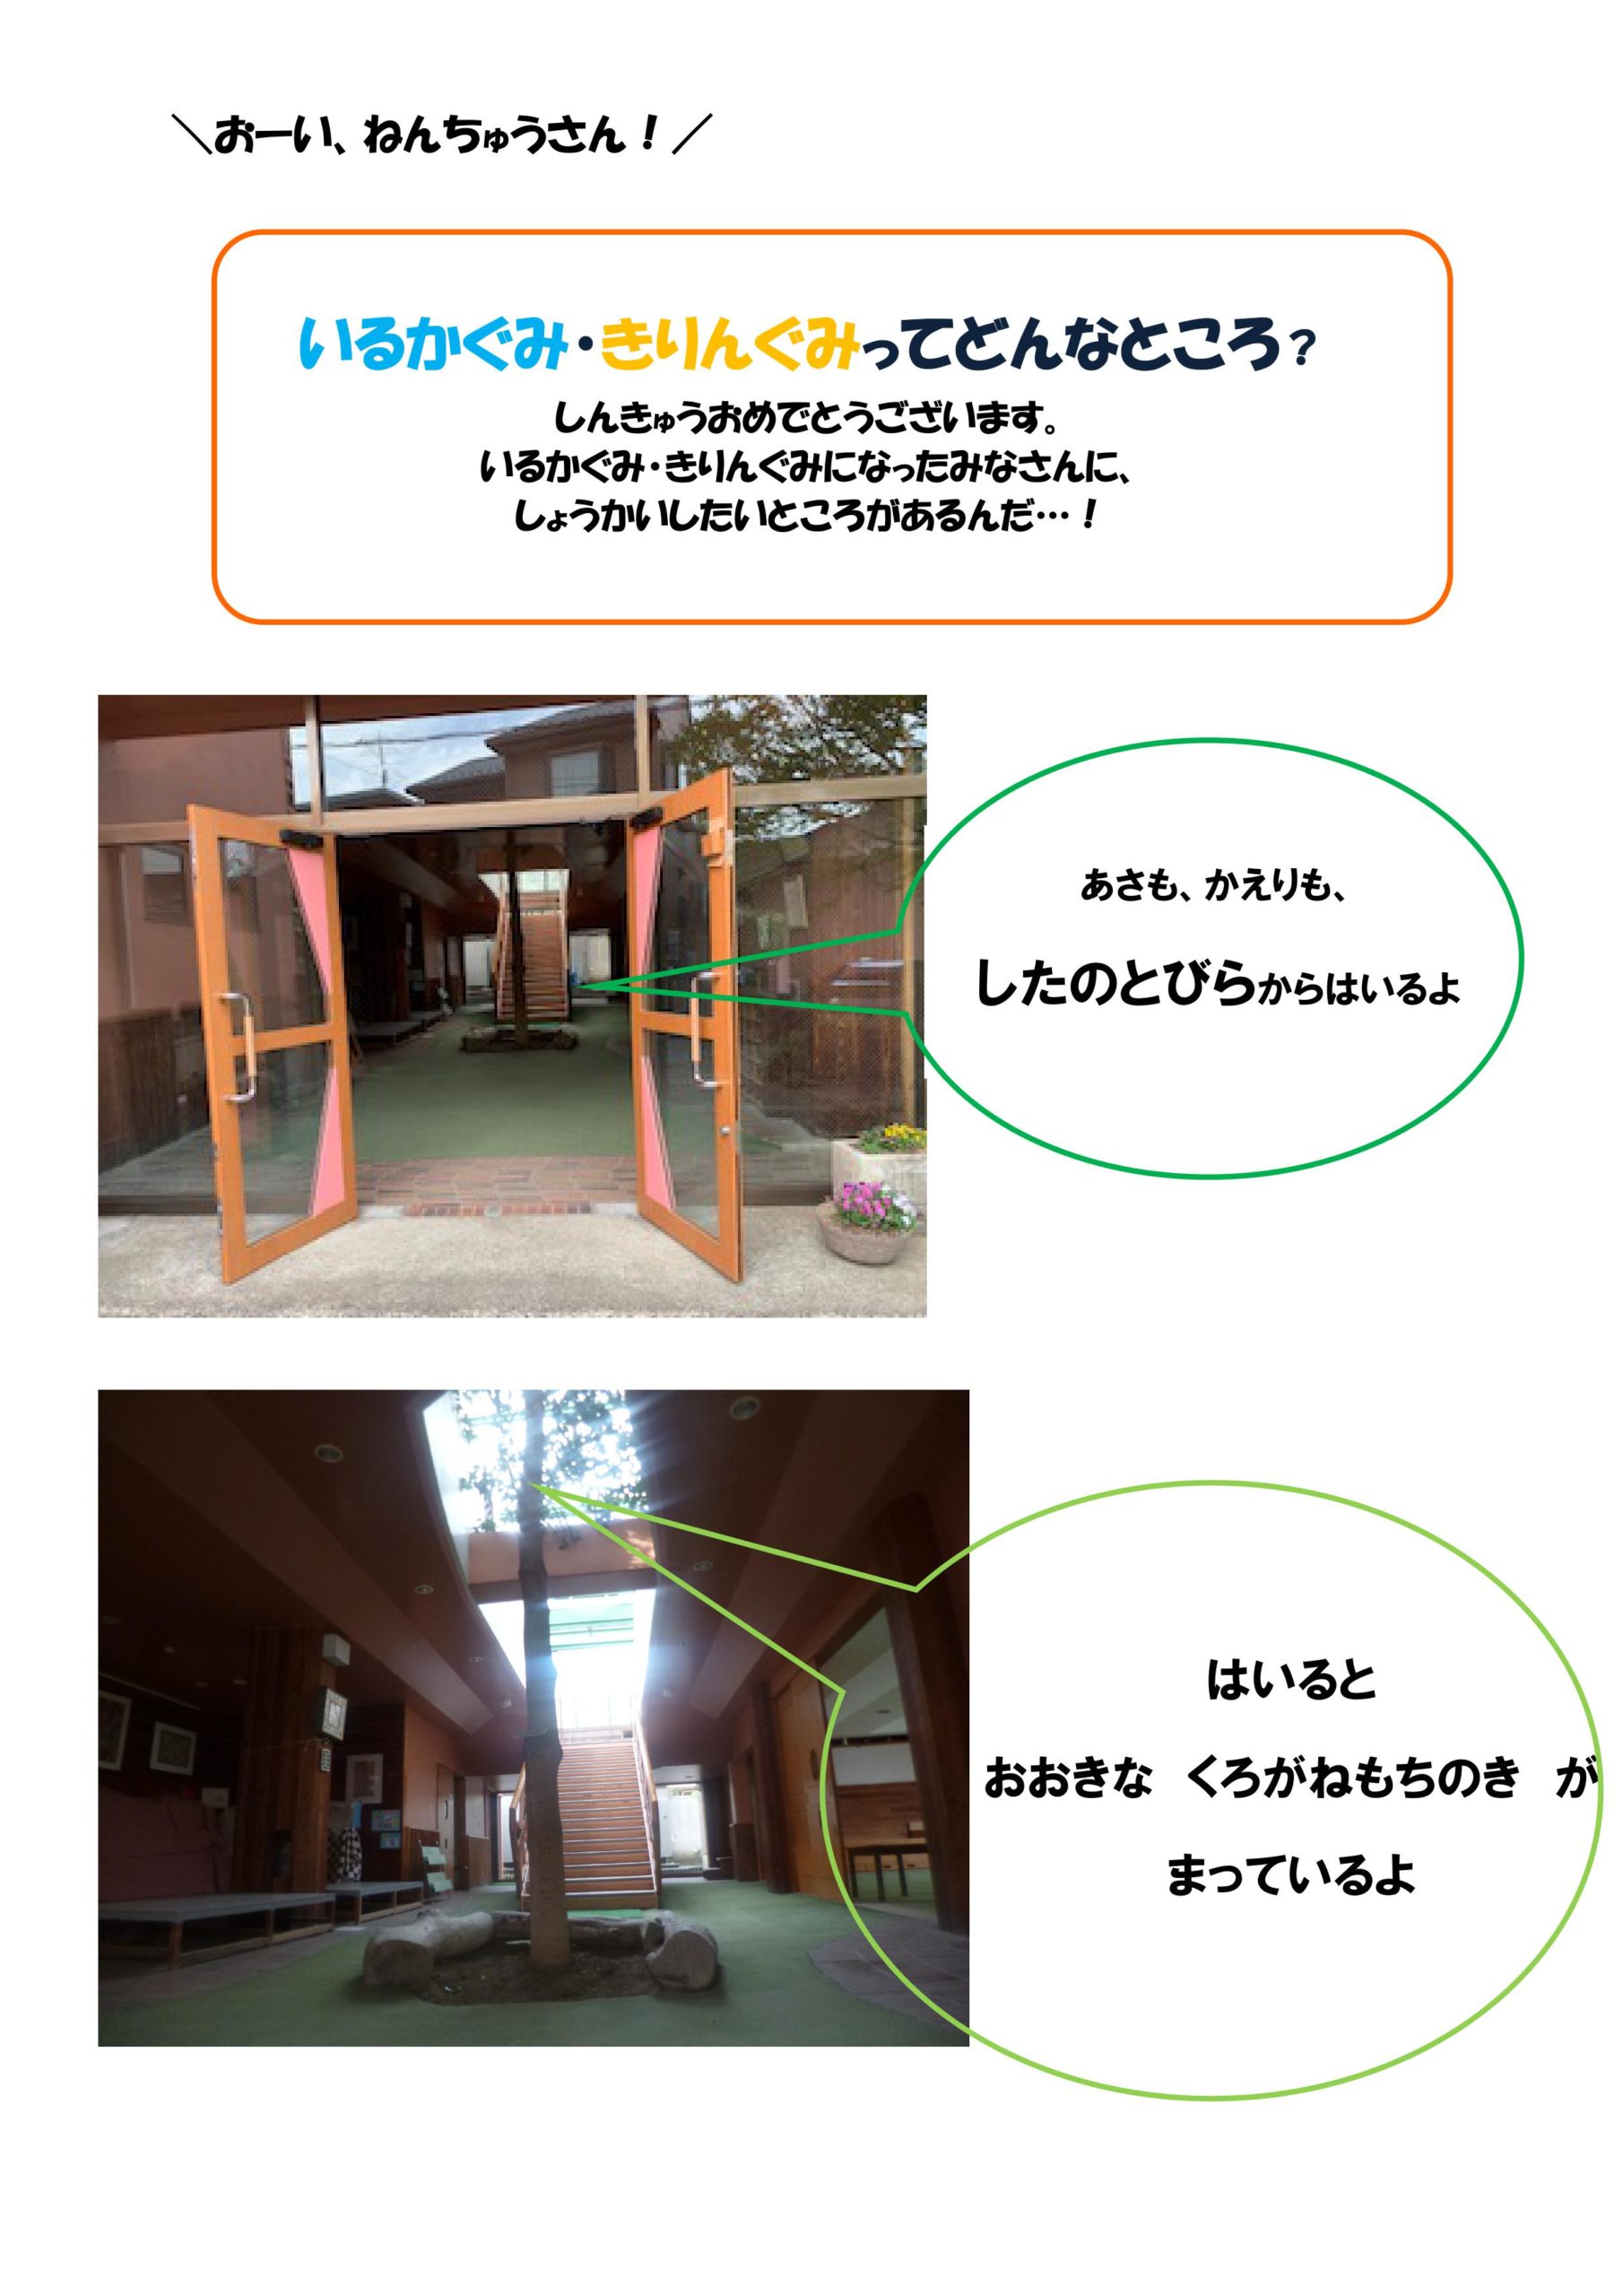 いるかぐみ きりんぐみをしょうかいするよ 伸びる会幼稚園 横浜